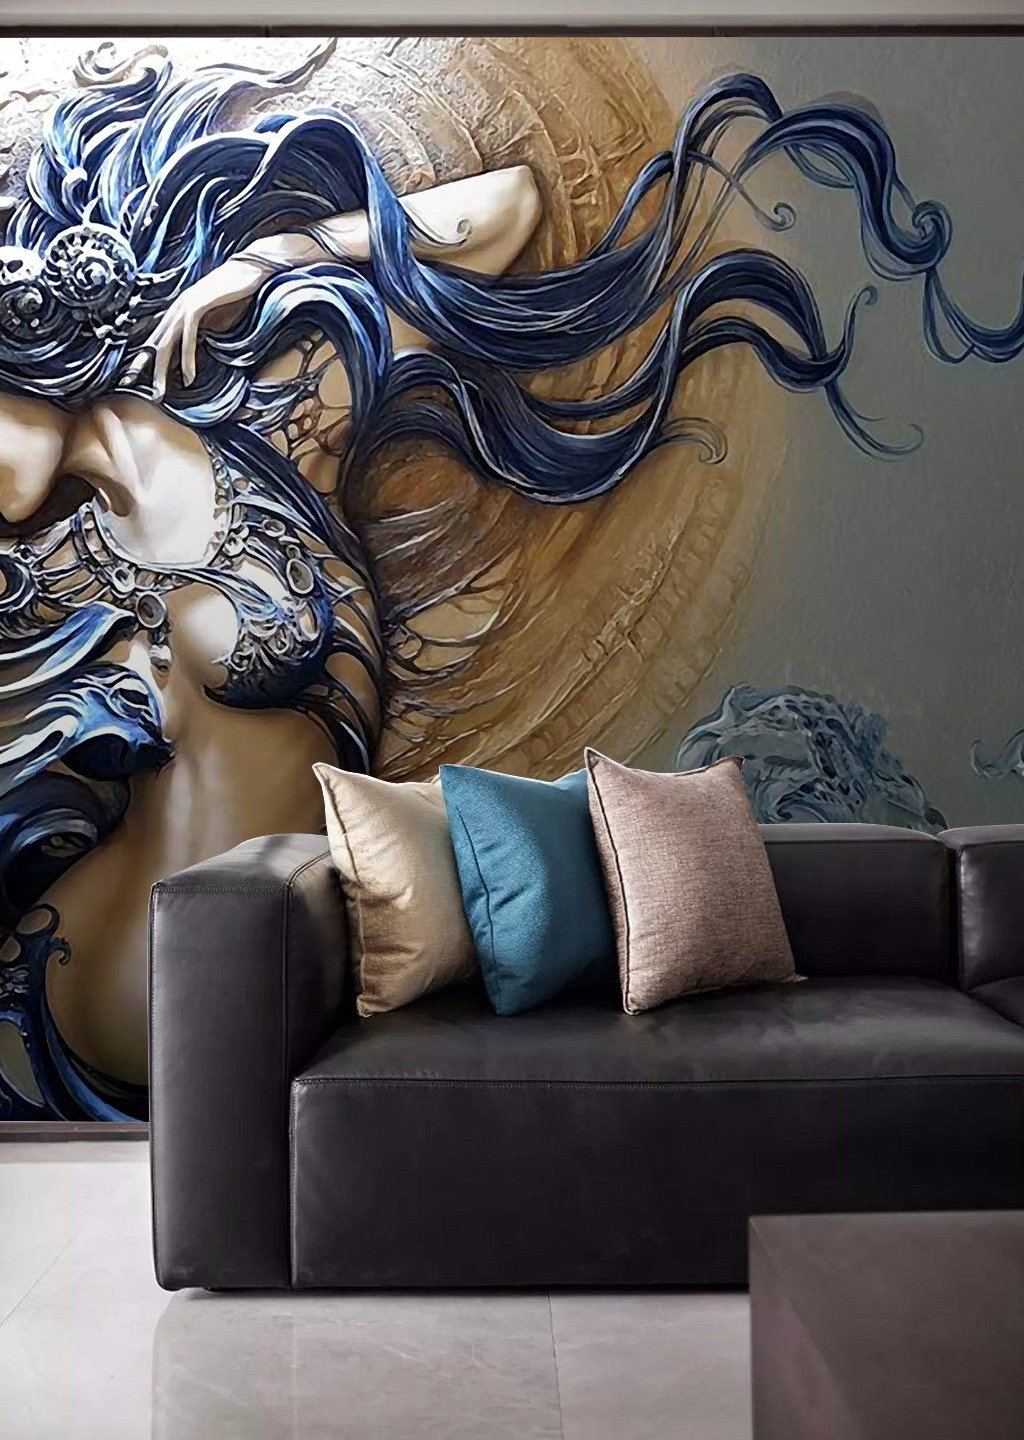 3D Sun Goddess 480 Wall Murals Wallpaper AJ Wallpaper 2 